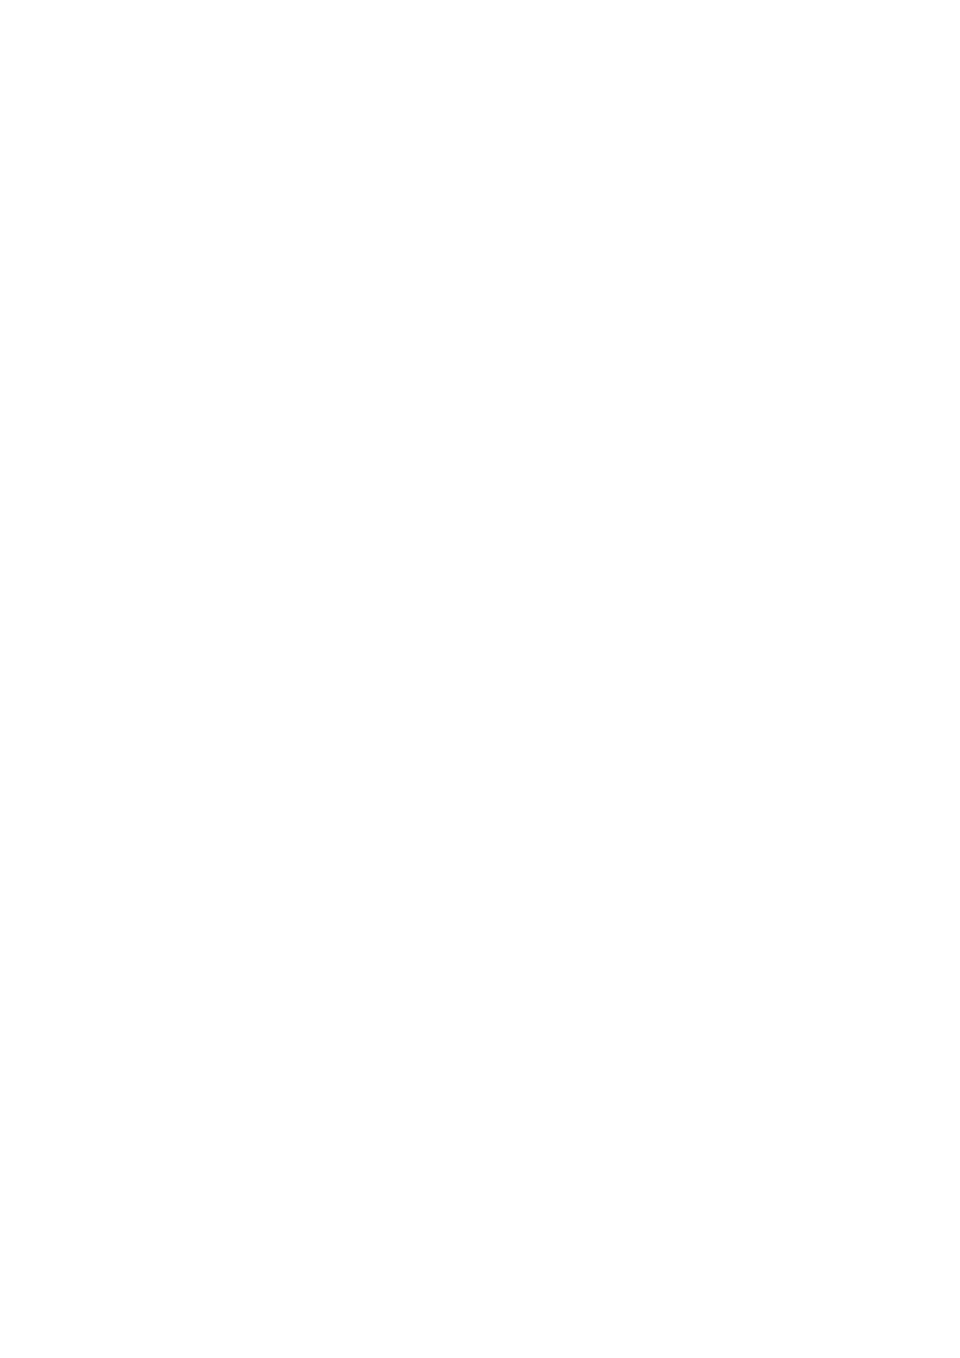 møte. PS 88/2014 behandles etter PS 85/2014 i dagens møte. PS 72/2014 Godkjenning av protokoll fra 10.06.2014 Saksprotokoll saksnr. 72/2014 i Formannskapet - 21.08.2014 Ordfører Frank M.